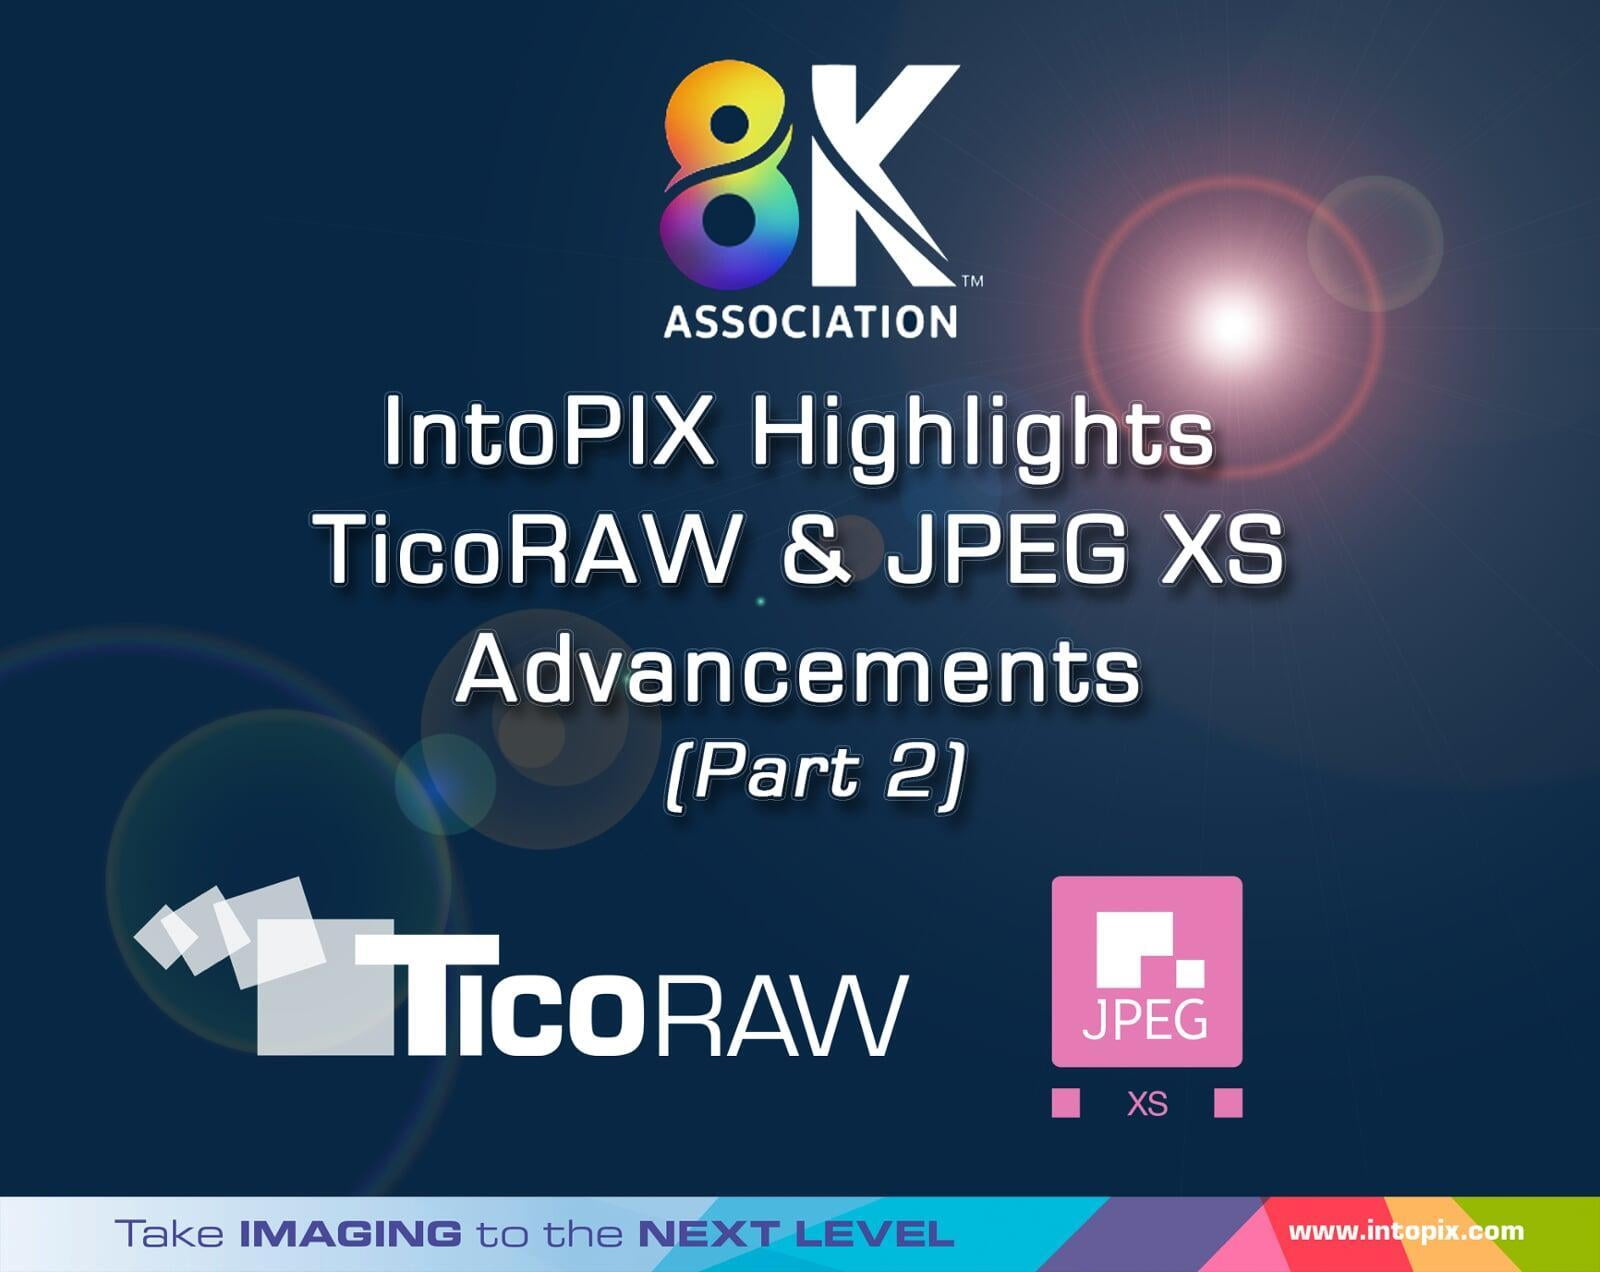 8K Association: IntoPIXのTicoRAWとJPEG XSの進化に注目（Part 2）